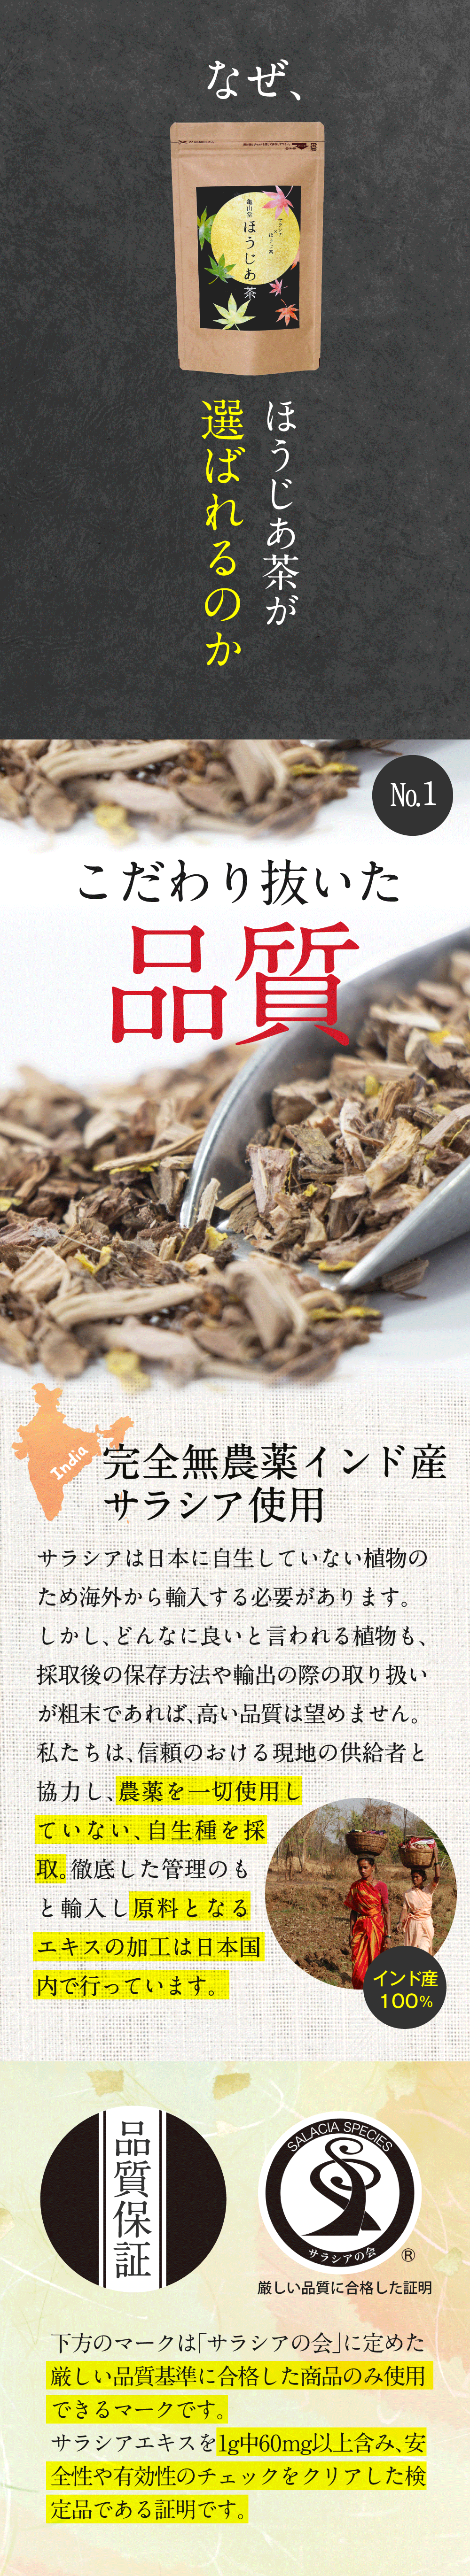 ほうじあ茶が選ばれる理由その１、こだわり抜いた品質。完全無農薬のインド産サラシアを使用しており、農薬を一切使用していない自生種を採取。そして原料となるエキスの加工は日本国内で行っています。その他にもサラシアの会が定めた厳しい品質基準にも合格しています。